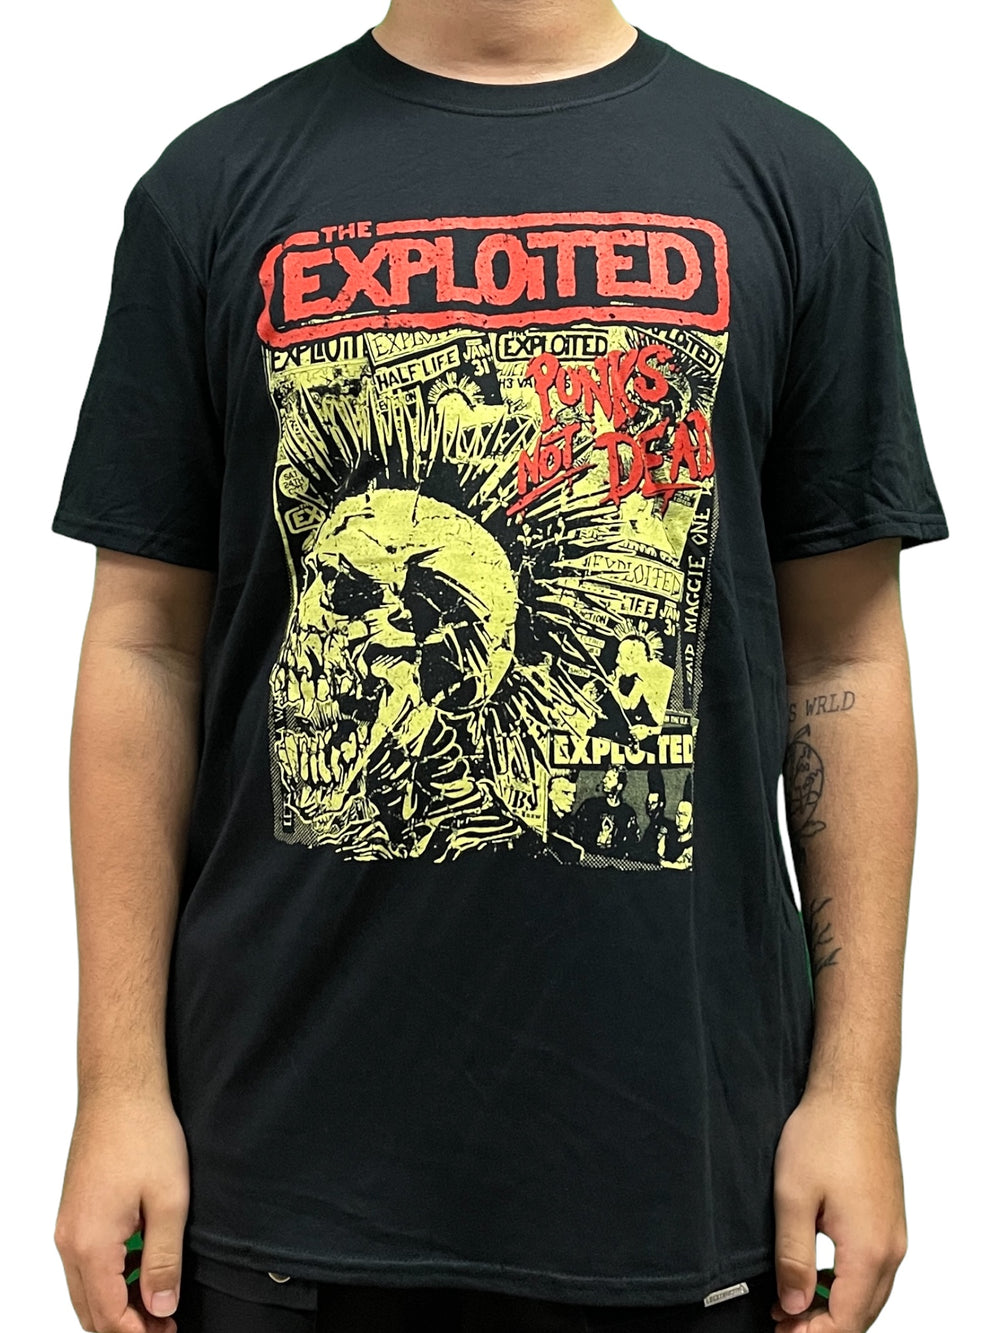 Exploited Punks Not Dead Black Unisex Official T Shirt Brand New Various Sizes